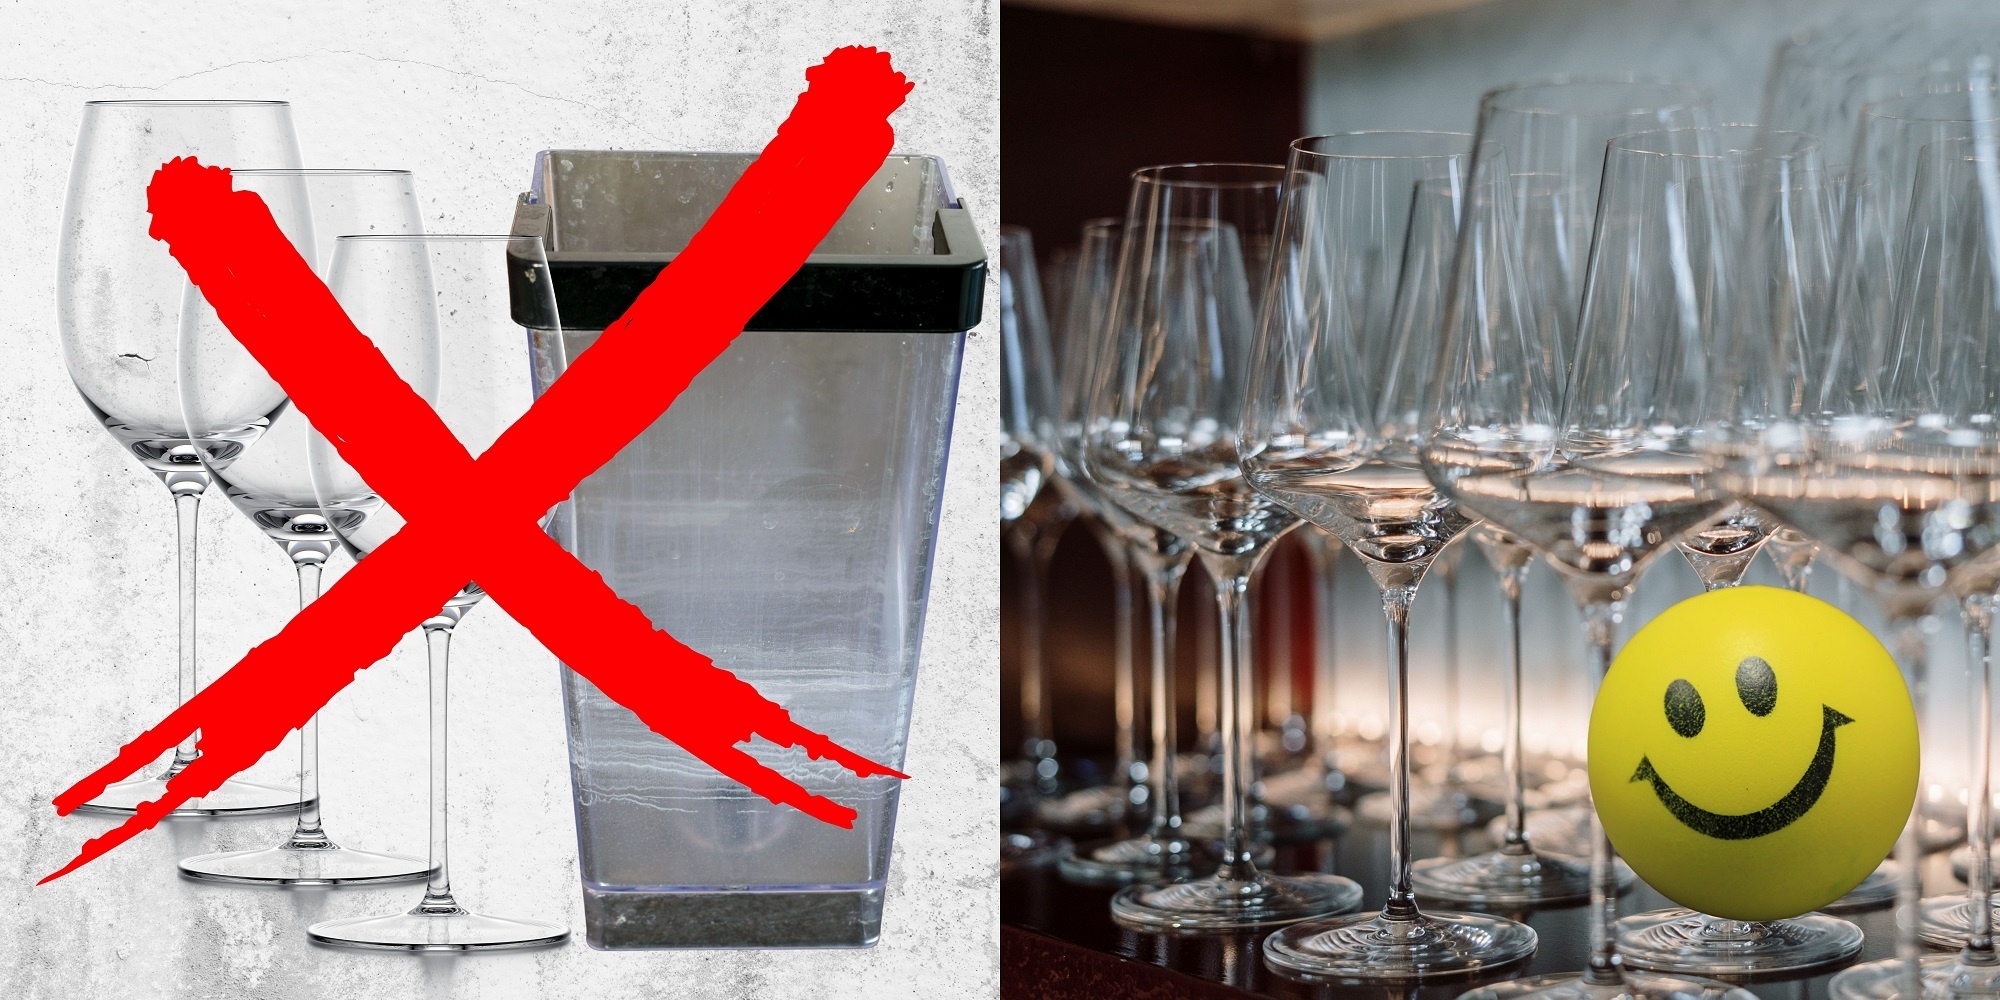 Comment éviter les dépôts blancs sur les verres ?